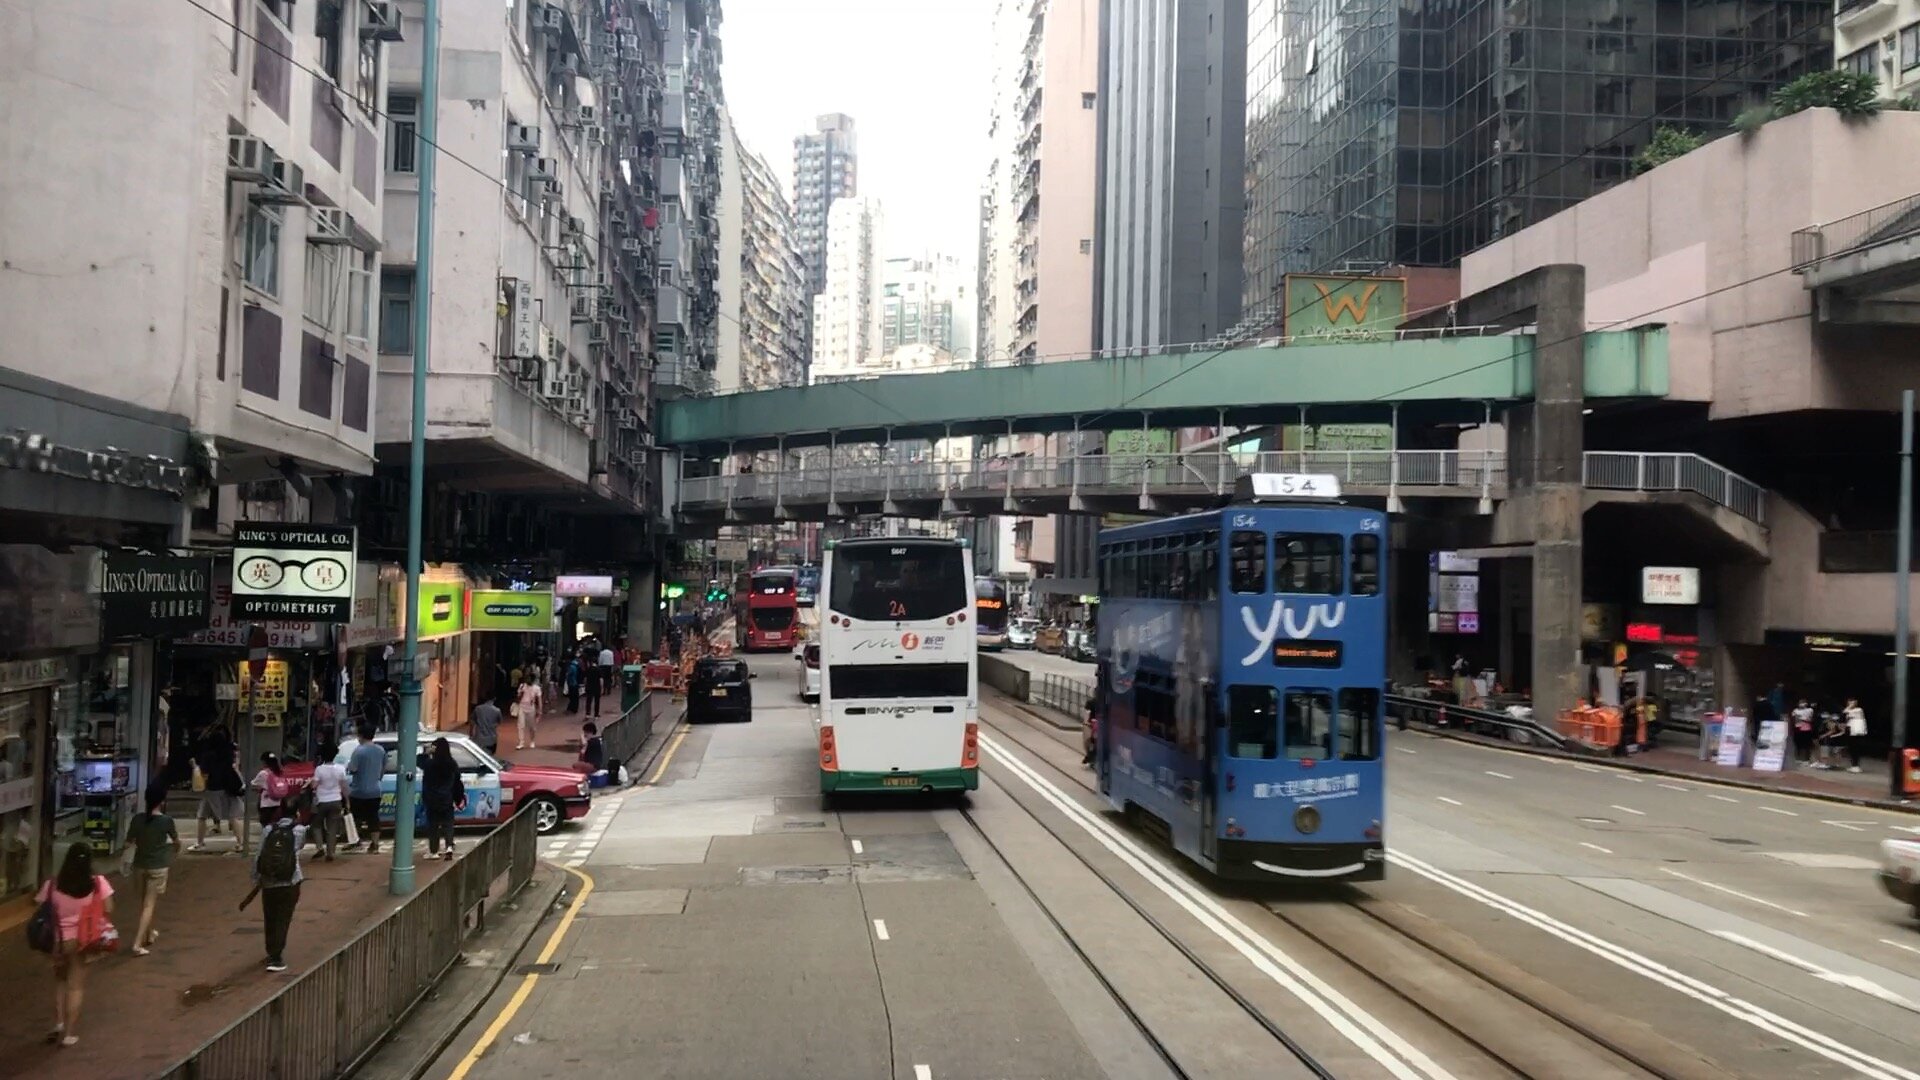 Street Scenes of Hong Kong